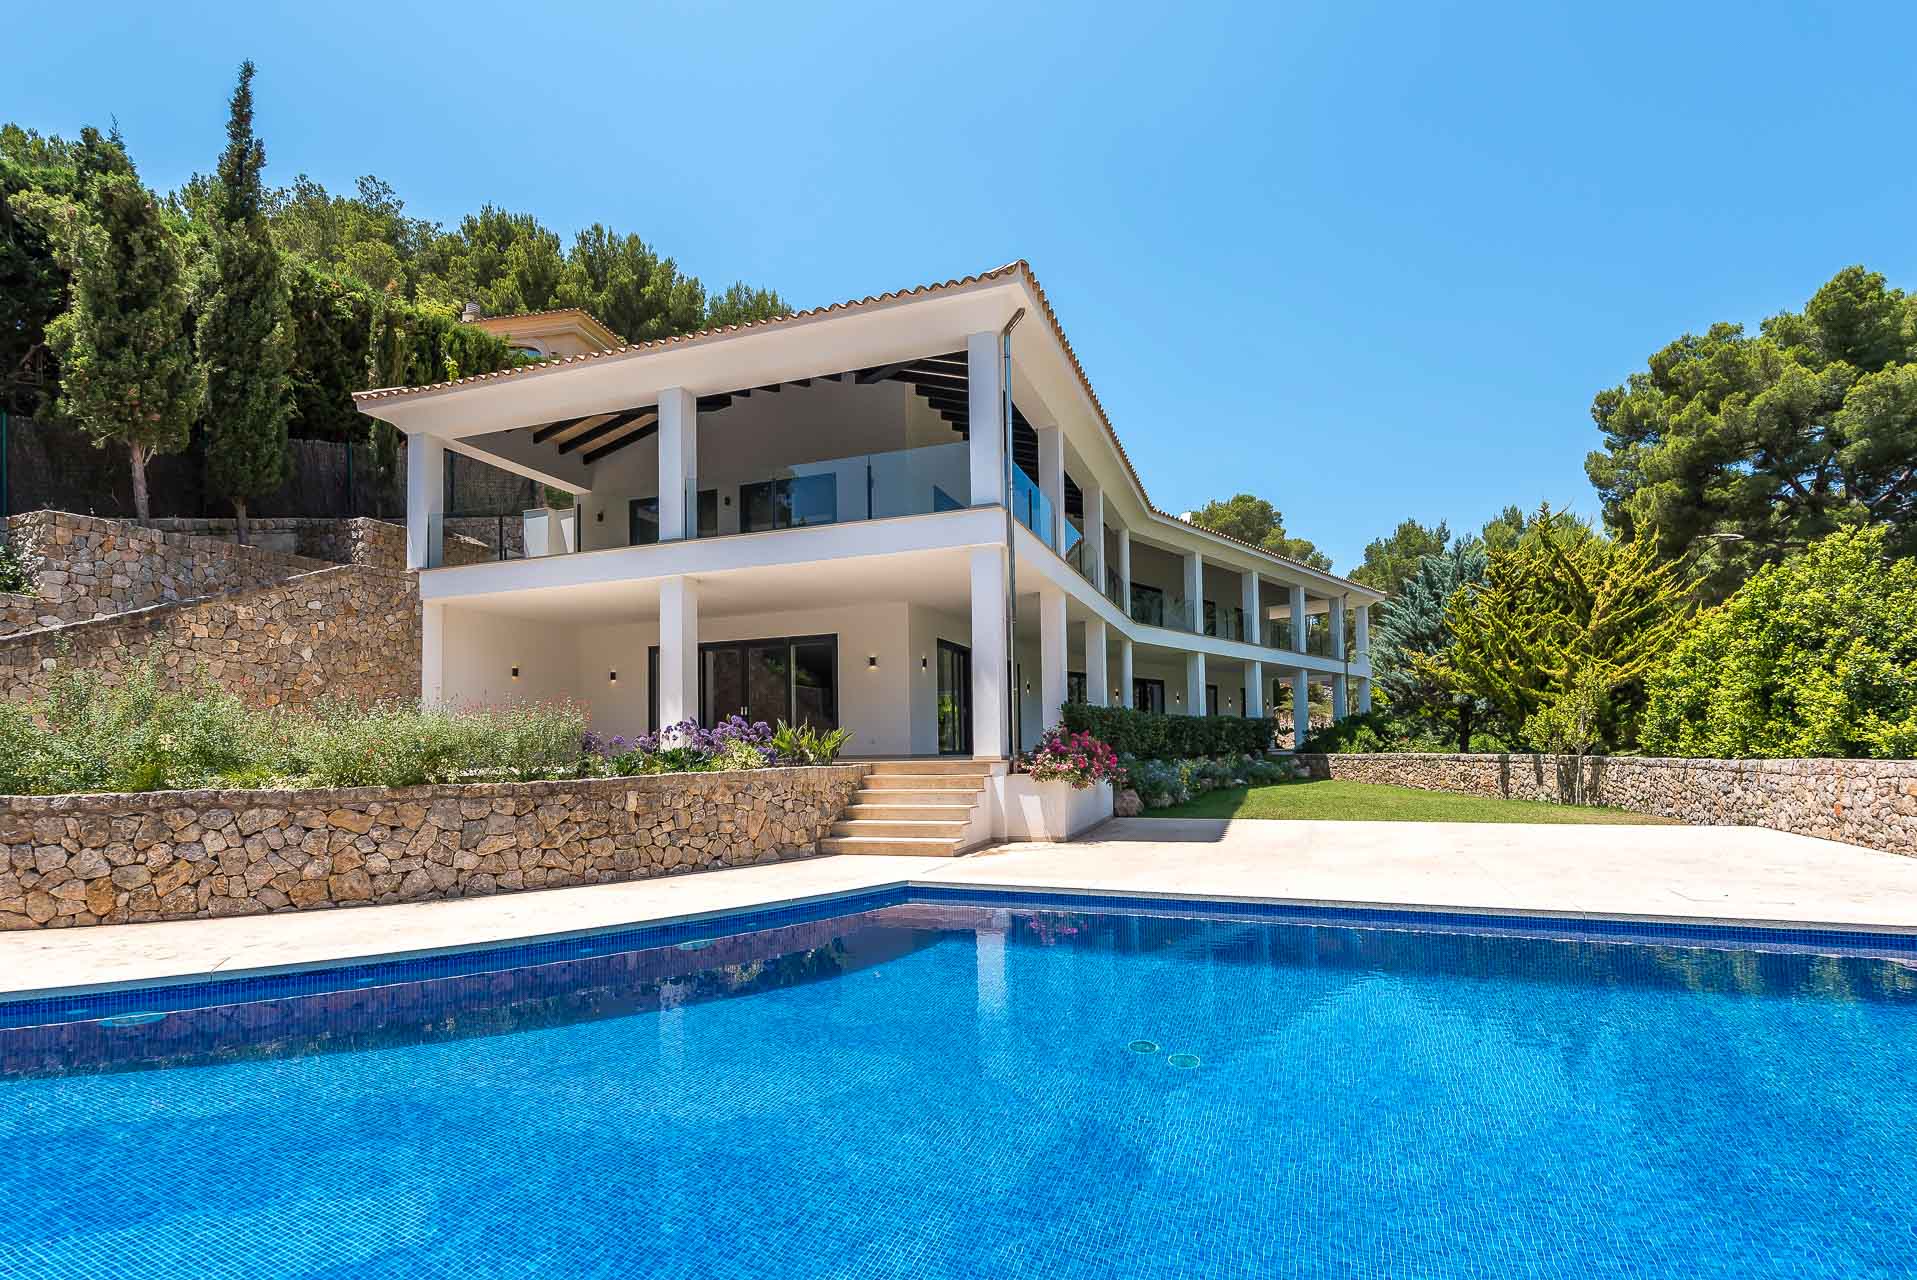 Exklusive kernsanierte Villa in zweiter Meereslinie in Cala Fornells - Moderne Villa mit Pool